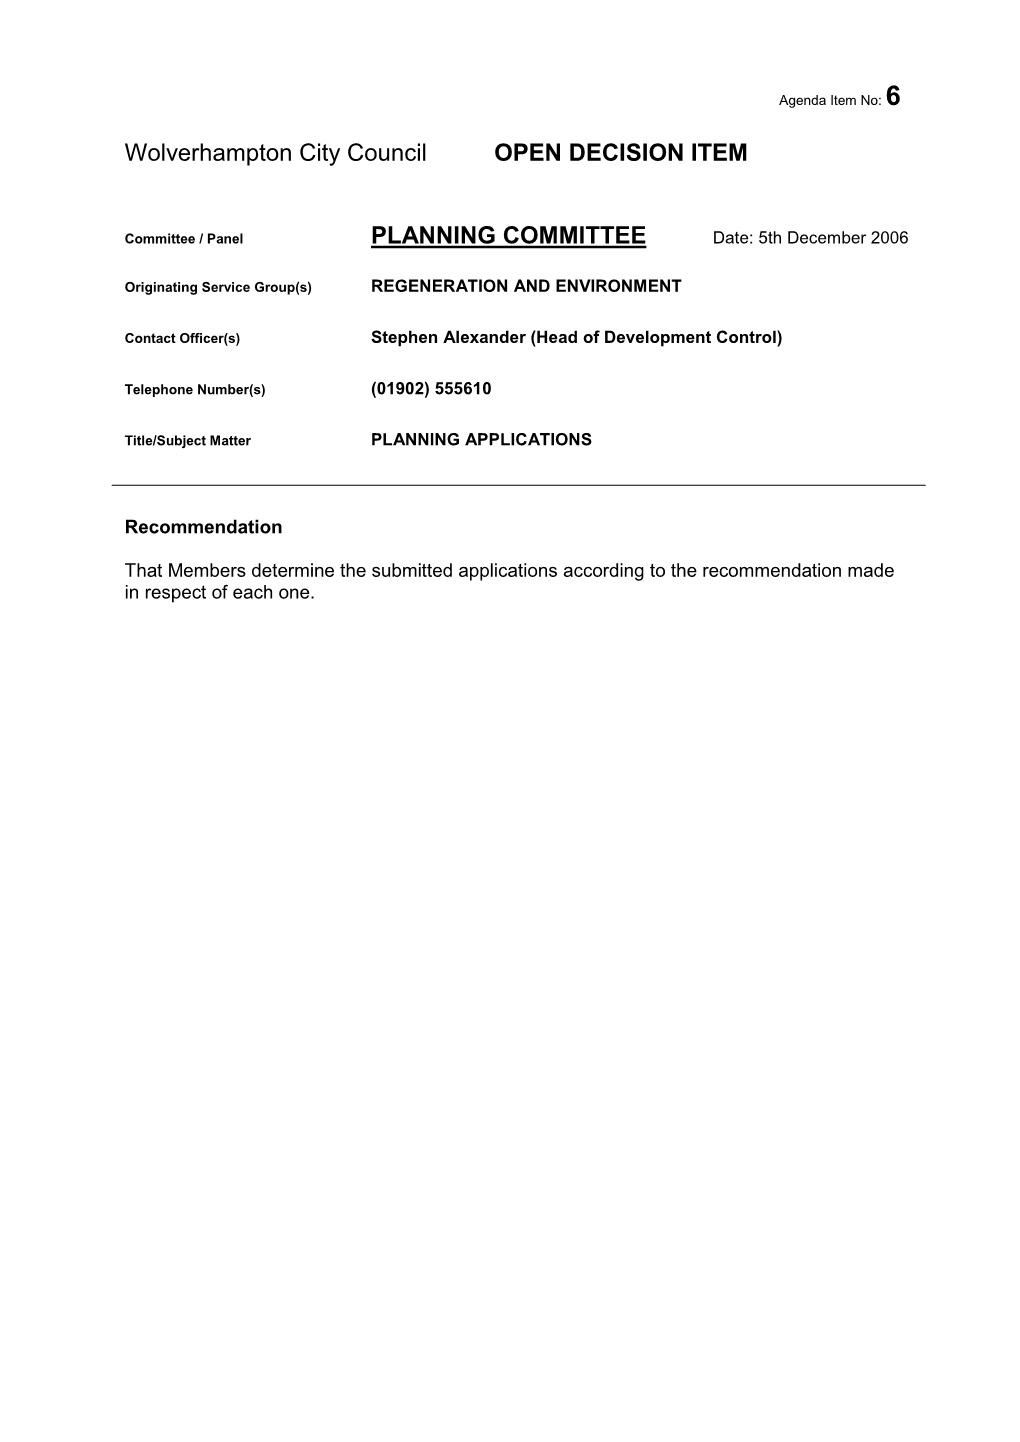 Wolverhampton City Council OPEN DECISION ITEM PLANNING